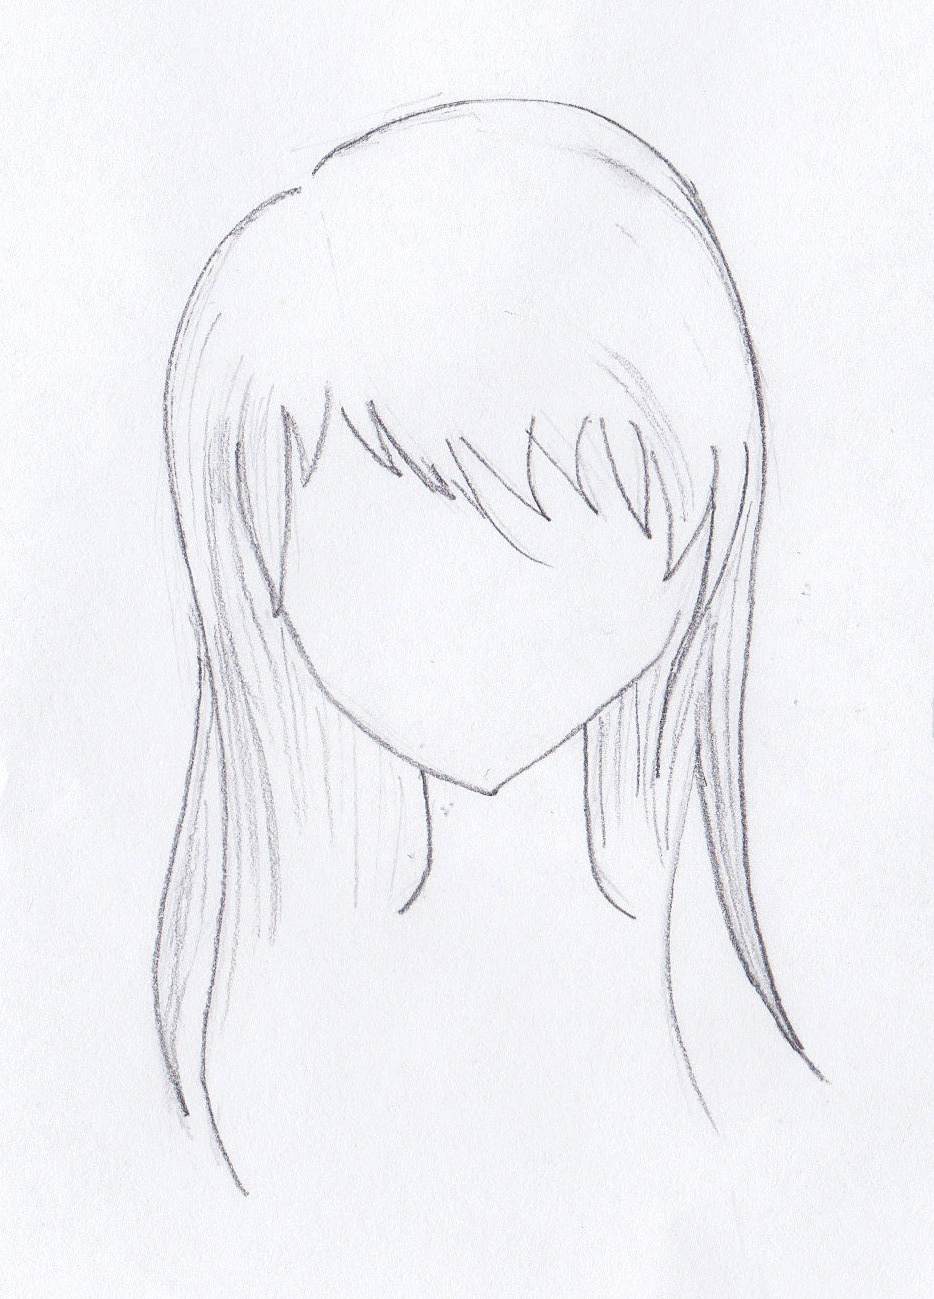 Easy Anime Girl Hair Sketch